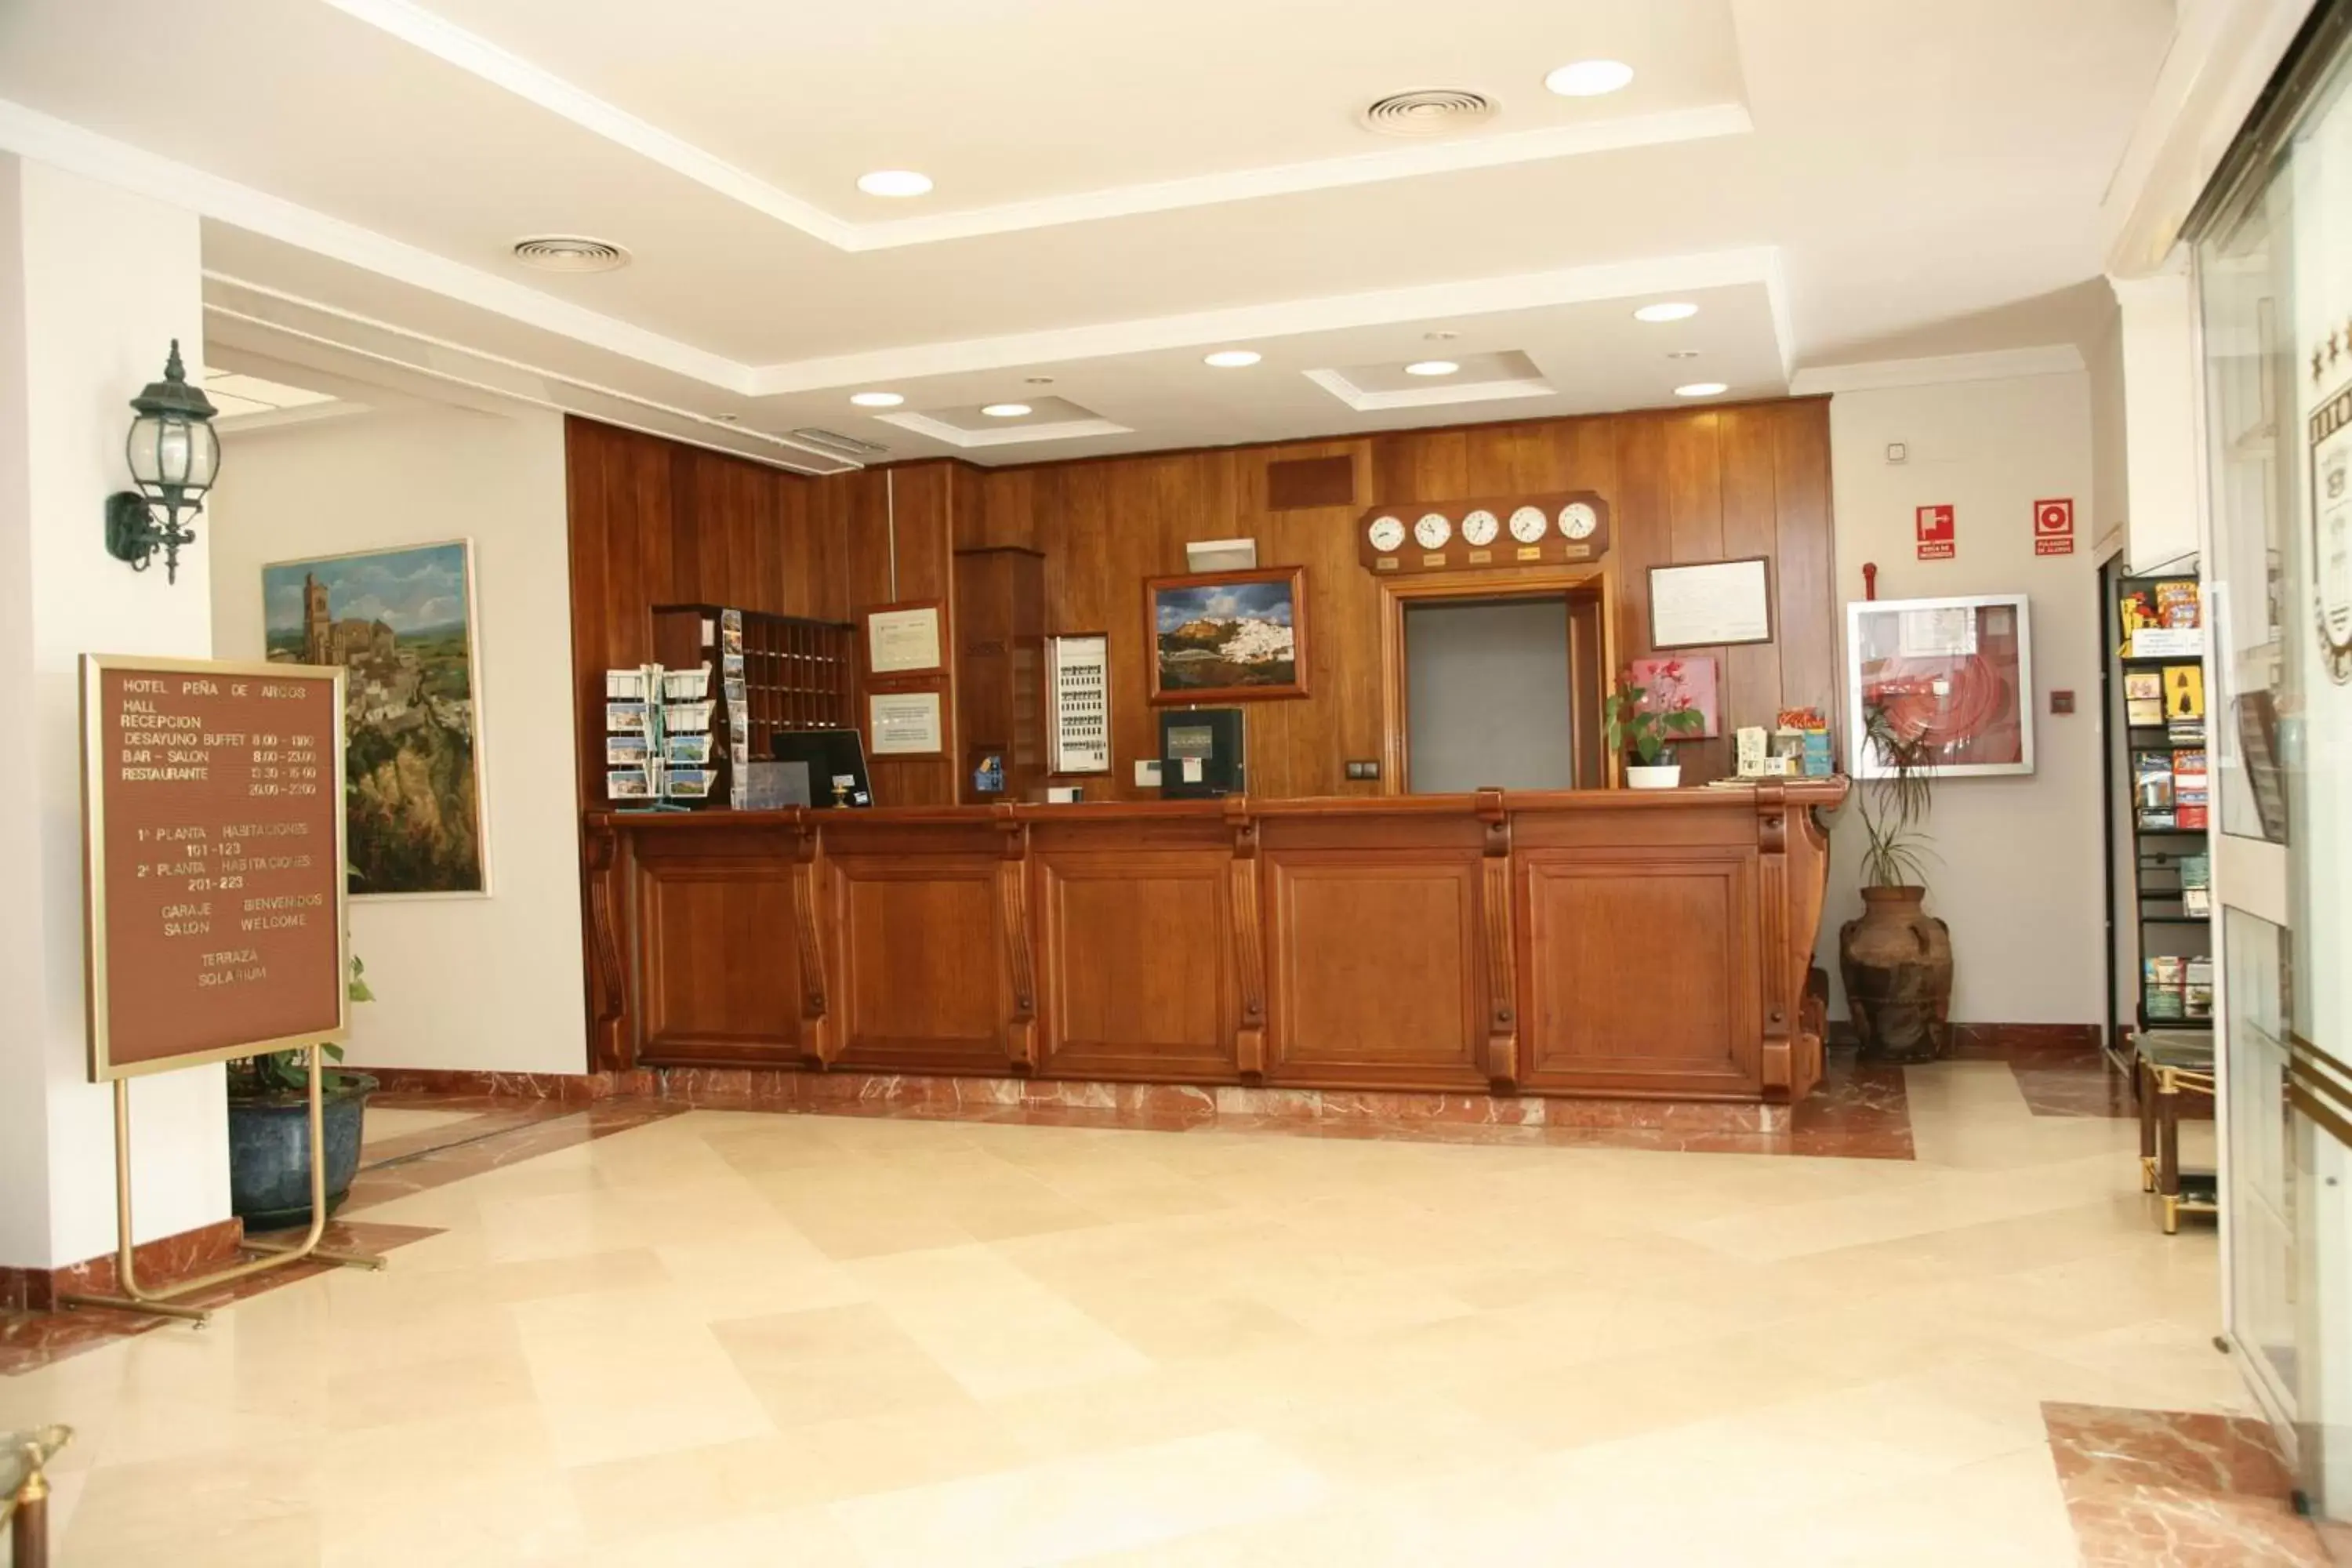 Lobby or reception, Lobby/Reception in Hotel Peña de Arcos